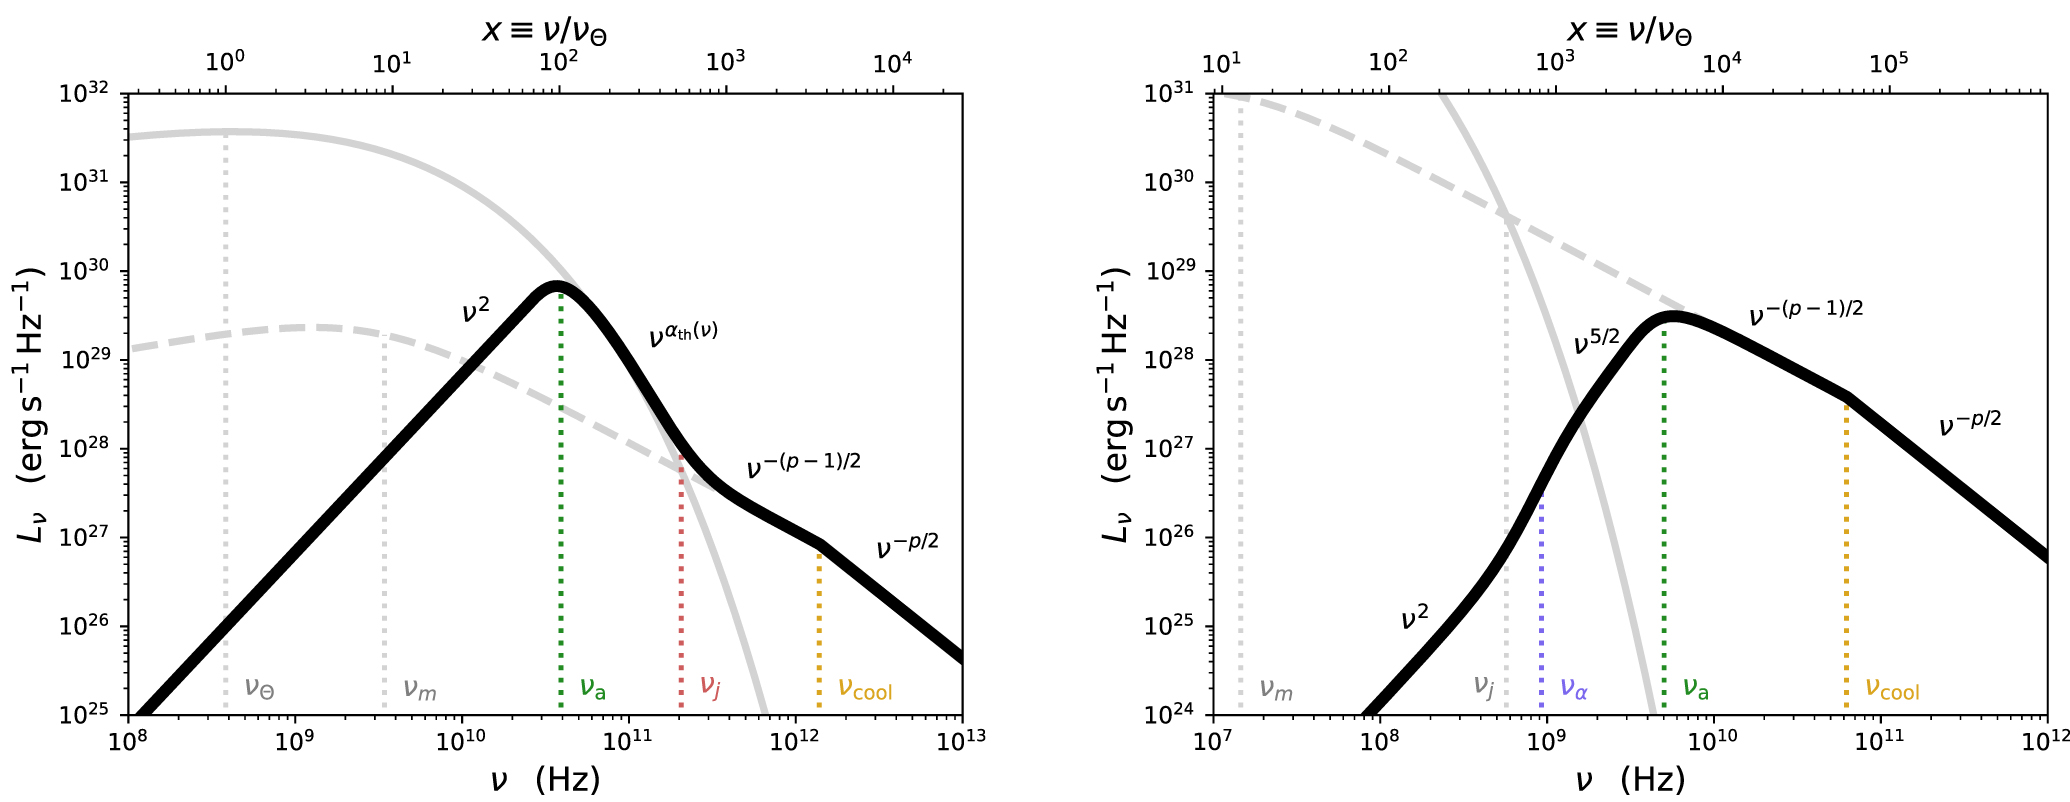 Przykłady rozkładów energii w widmie promieniowania elektromagnetycznego (częstotliwość ν versus dzielność/moc promieniowania Lν), w których maksimum emisji promieniowania jest zdominowane przez emisje z populacji elektronów o rozkładzie termicznym (po lewej) lub rozkładzie nietermicznym (po prawej). Źródło: Ben Margalit and Eliot Quataert 2021 ApJL 923 L14